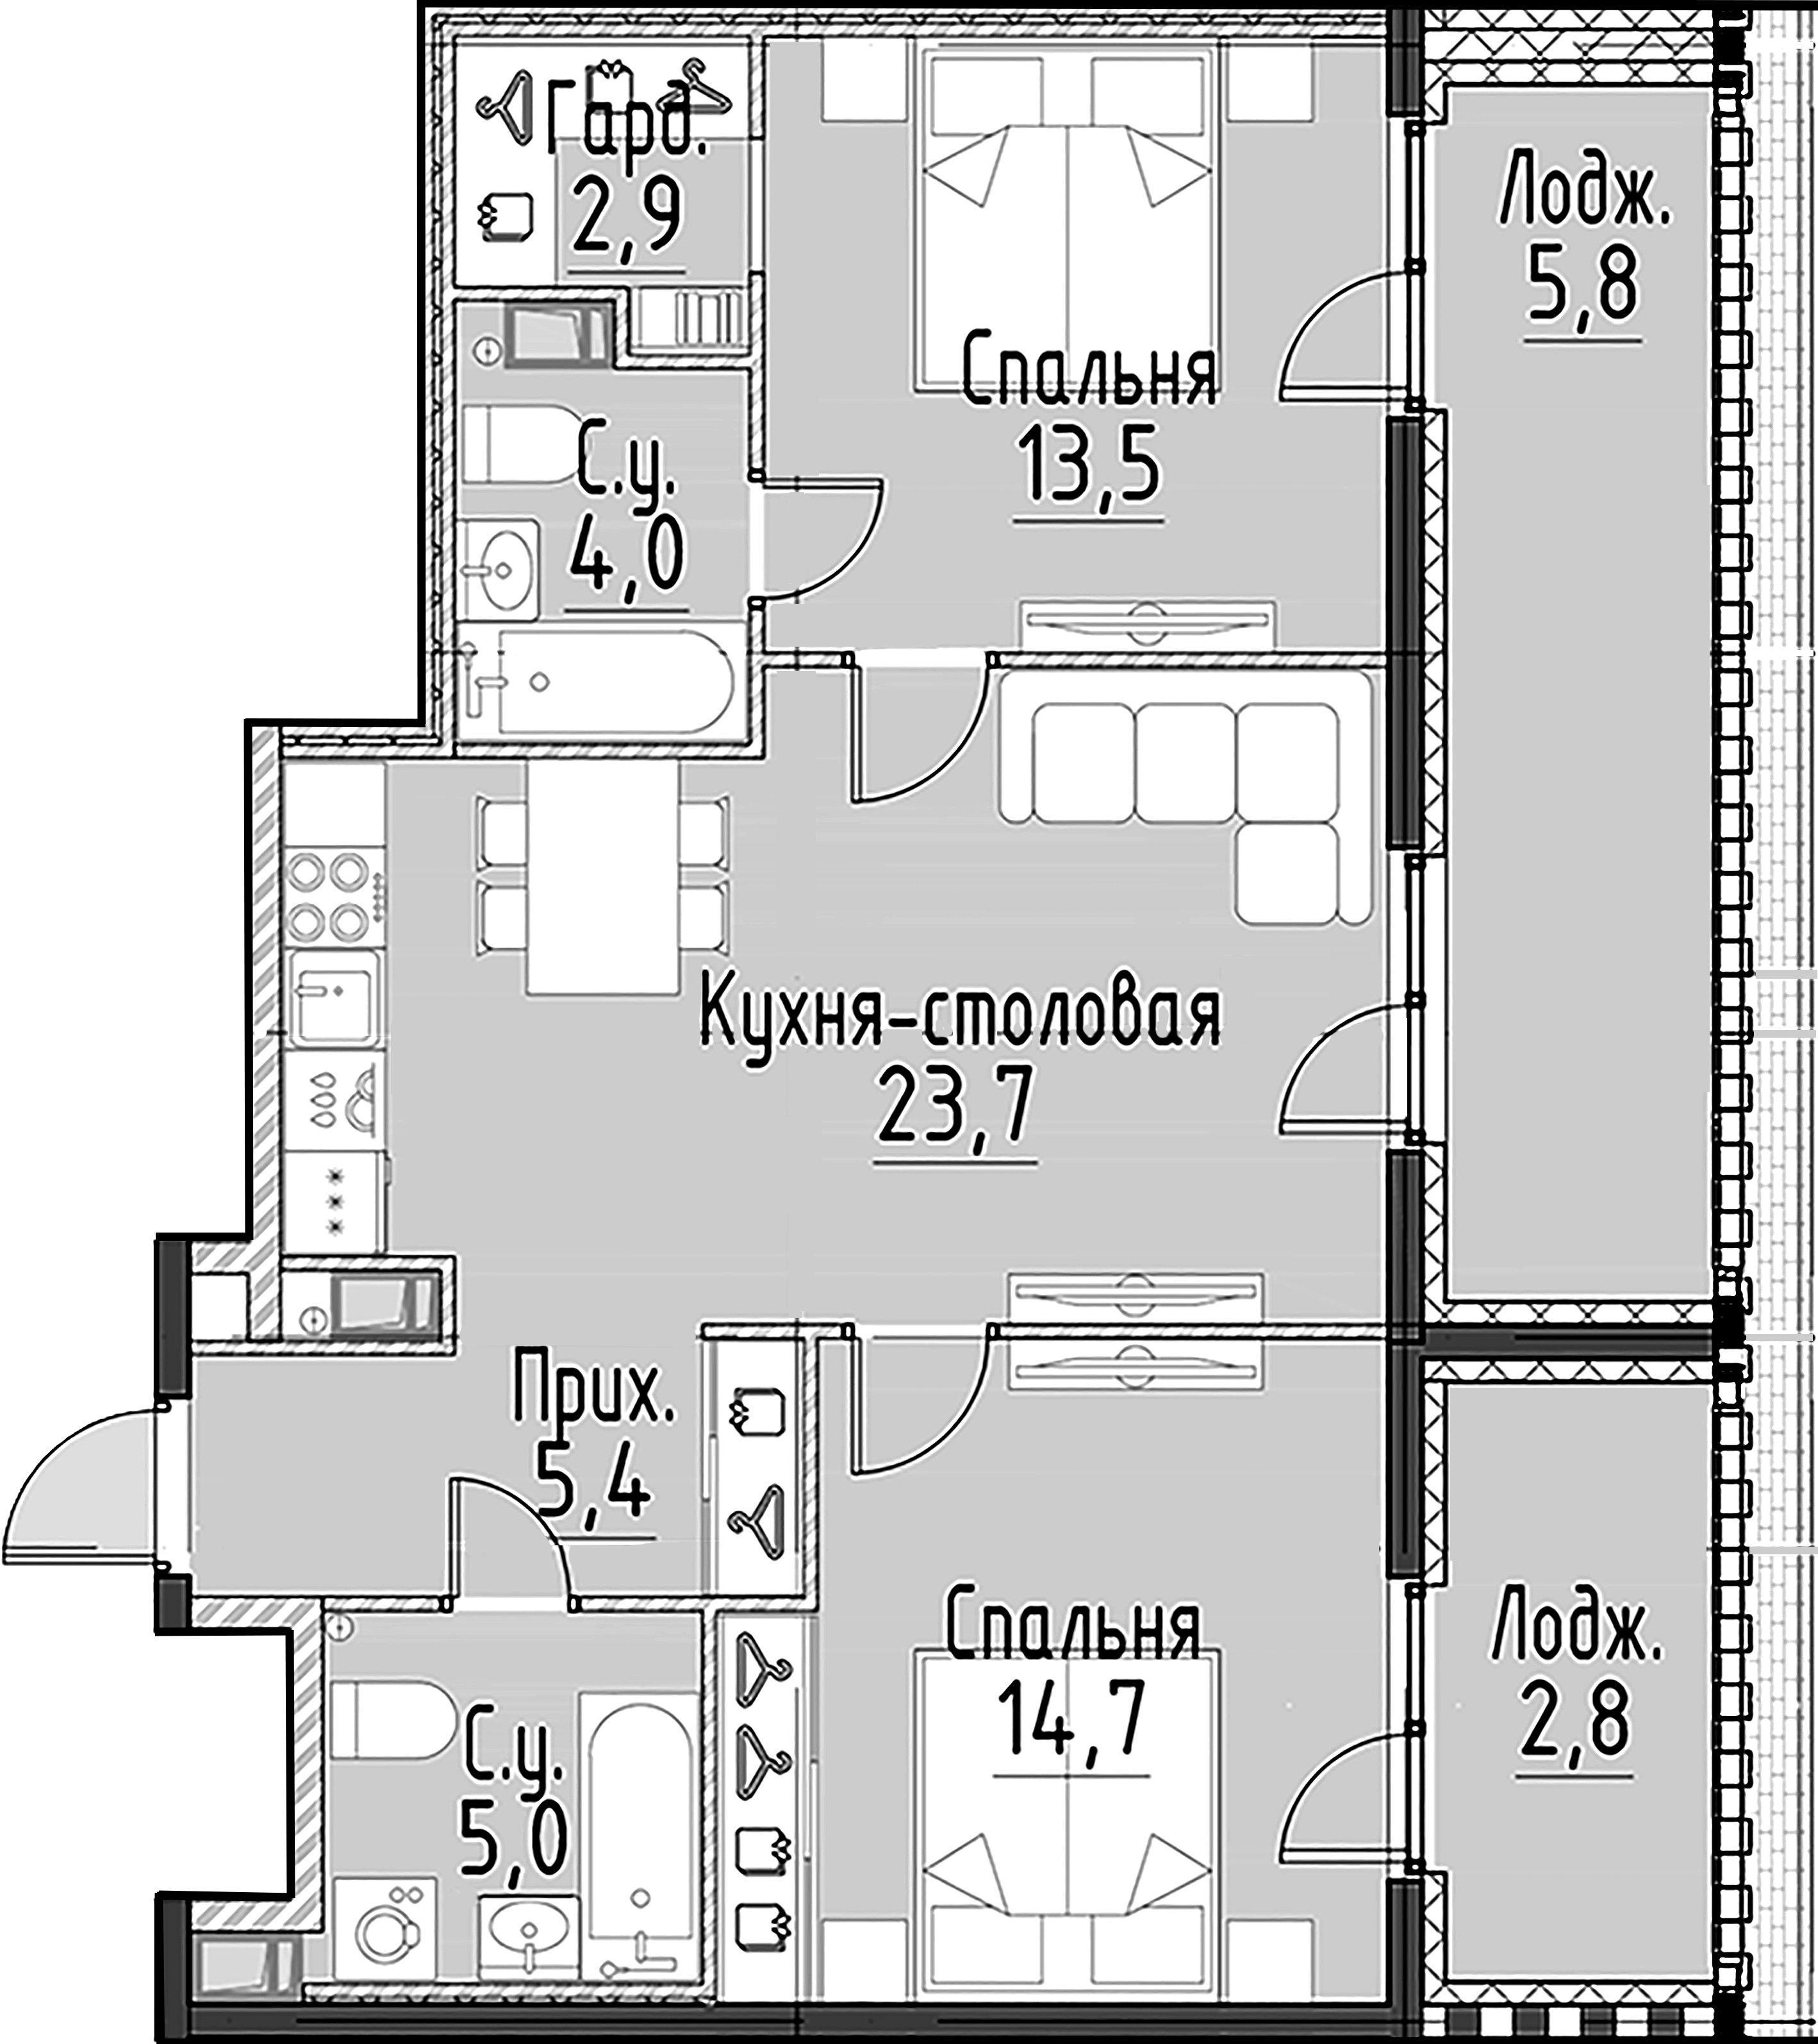 2-комнатная квартира  №115 в Моисеенко, 10: 69.3 м², этаж 5 - купить в Санкт-Петербурге